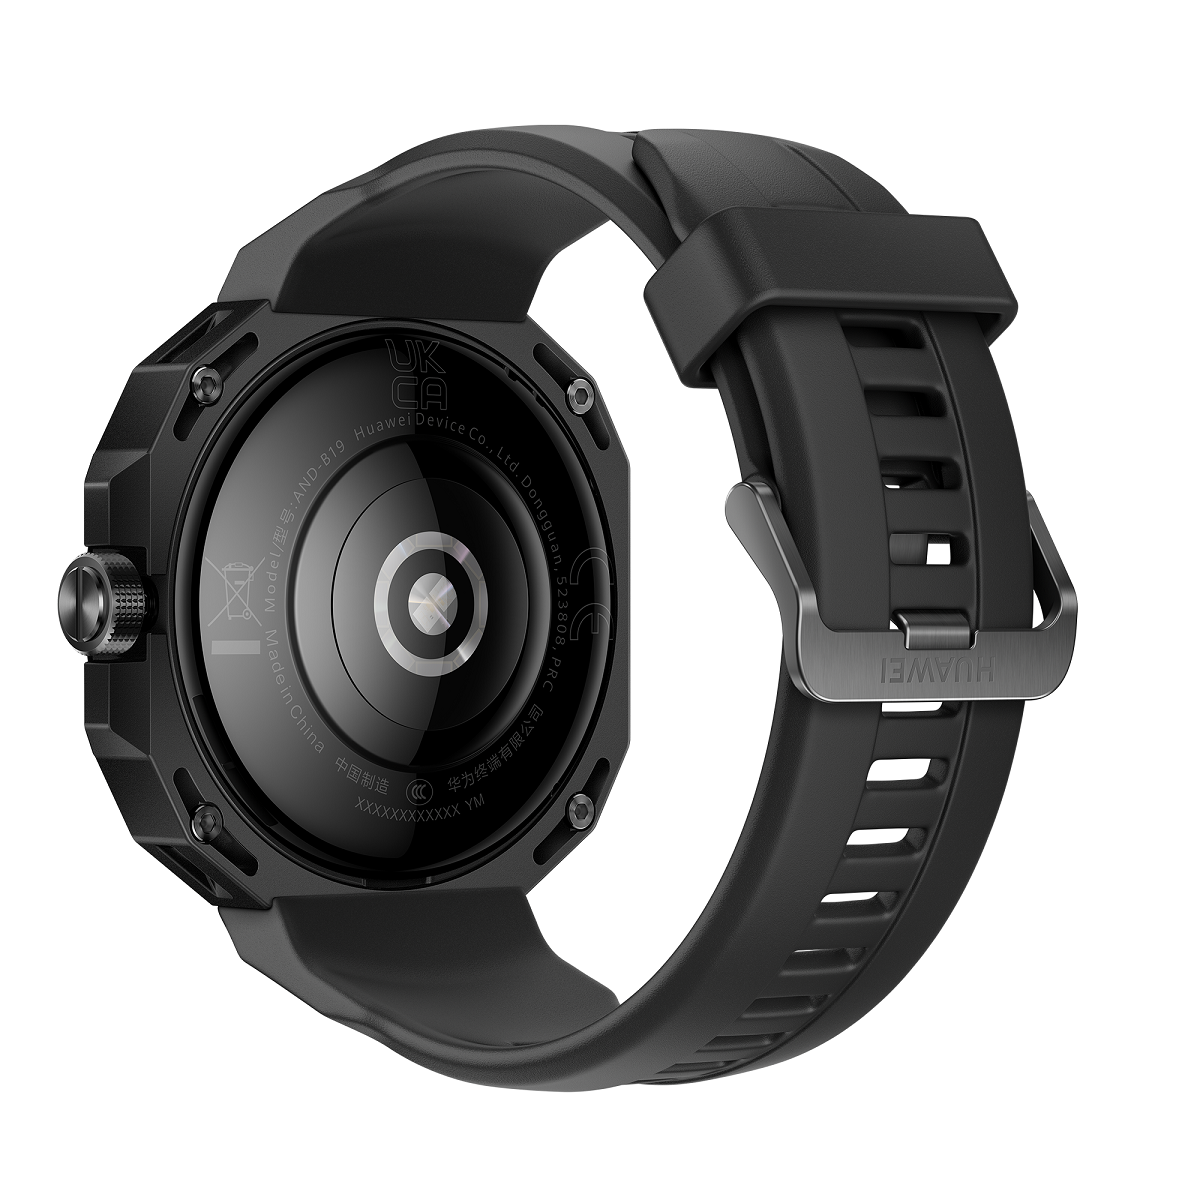 HUAWEI WATCH GT Cyber, thêm một đồng hồ thông minh chất từ Huawei - Arnold ProductImage Black Rear Right PNG RGB 20220830